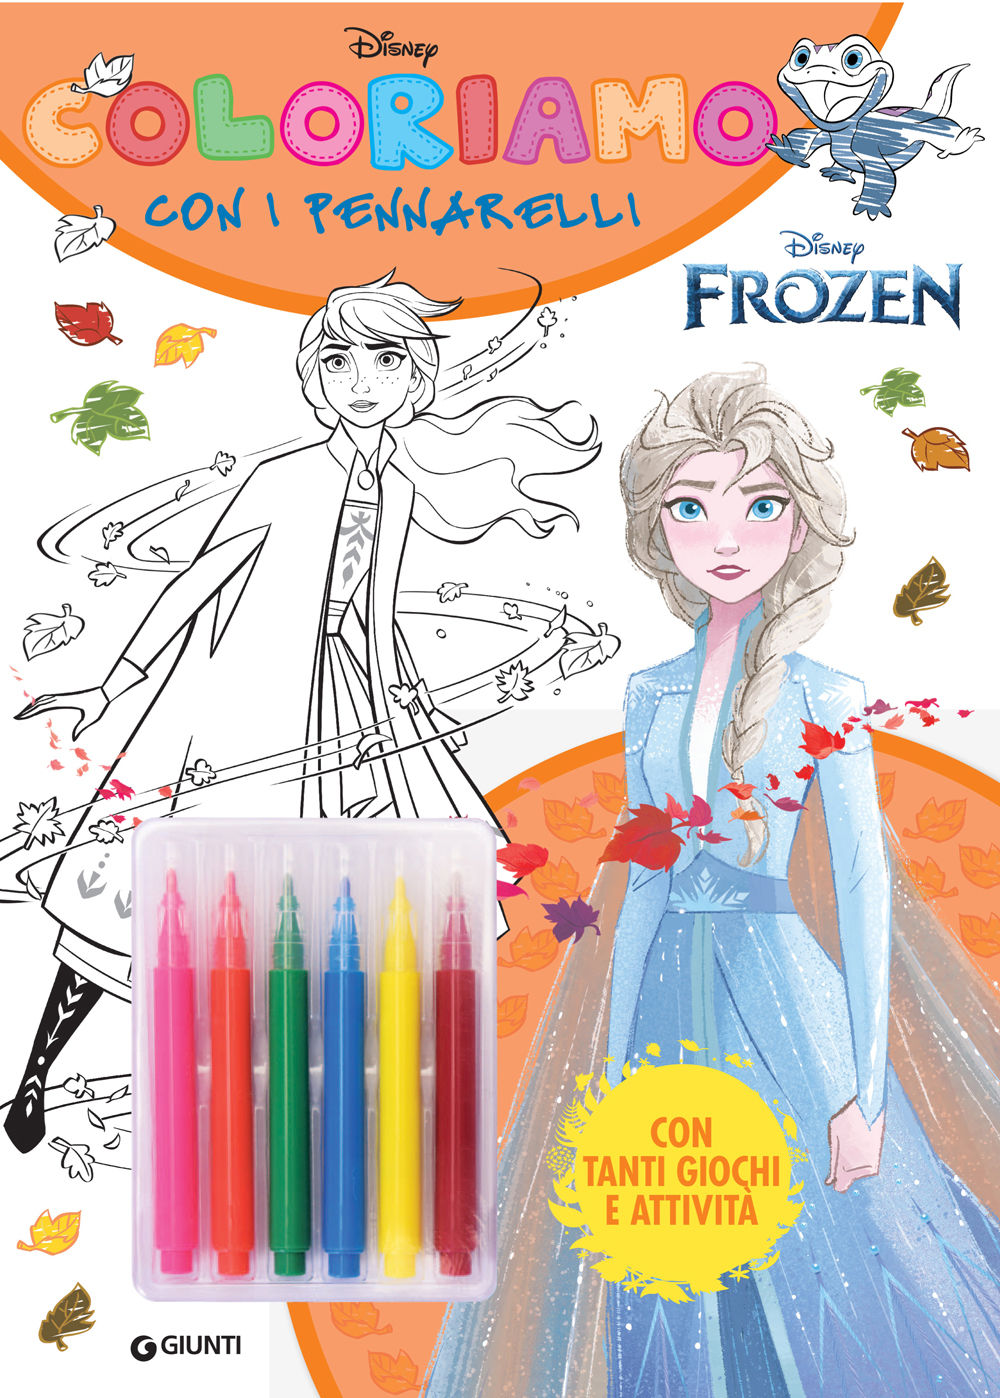 Coloriamo con i pennarelli Disney Frozen::Con tanti giochi e attività